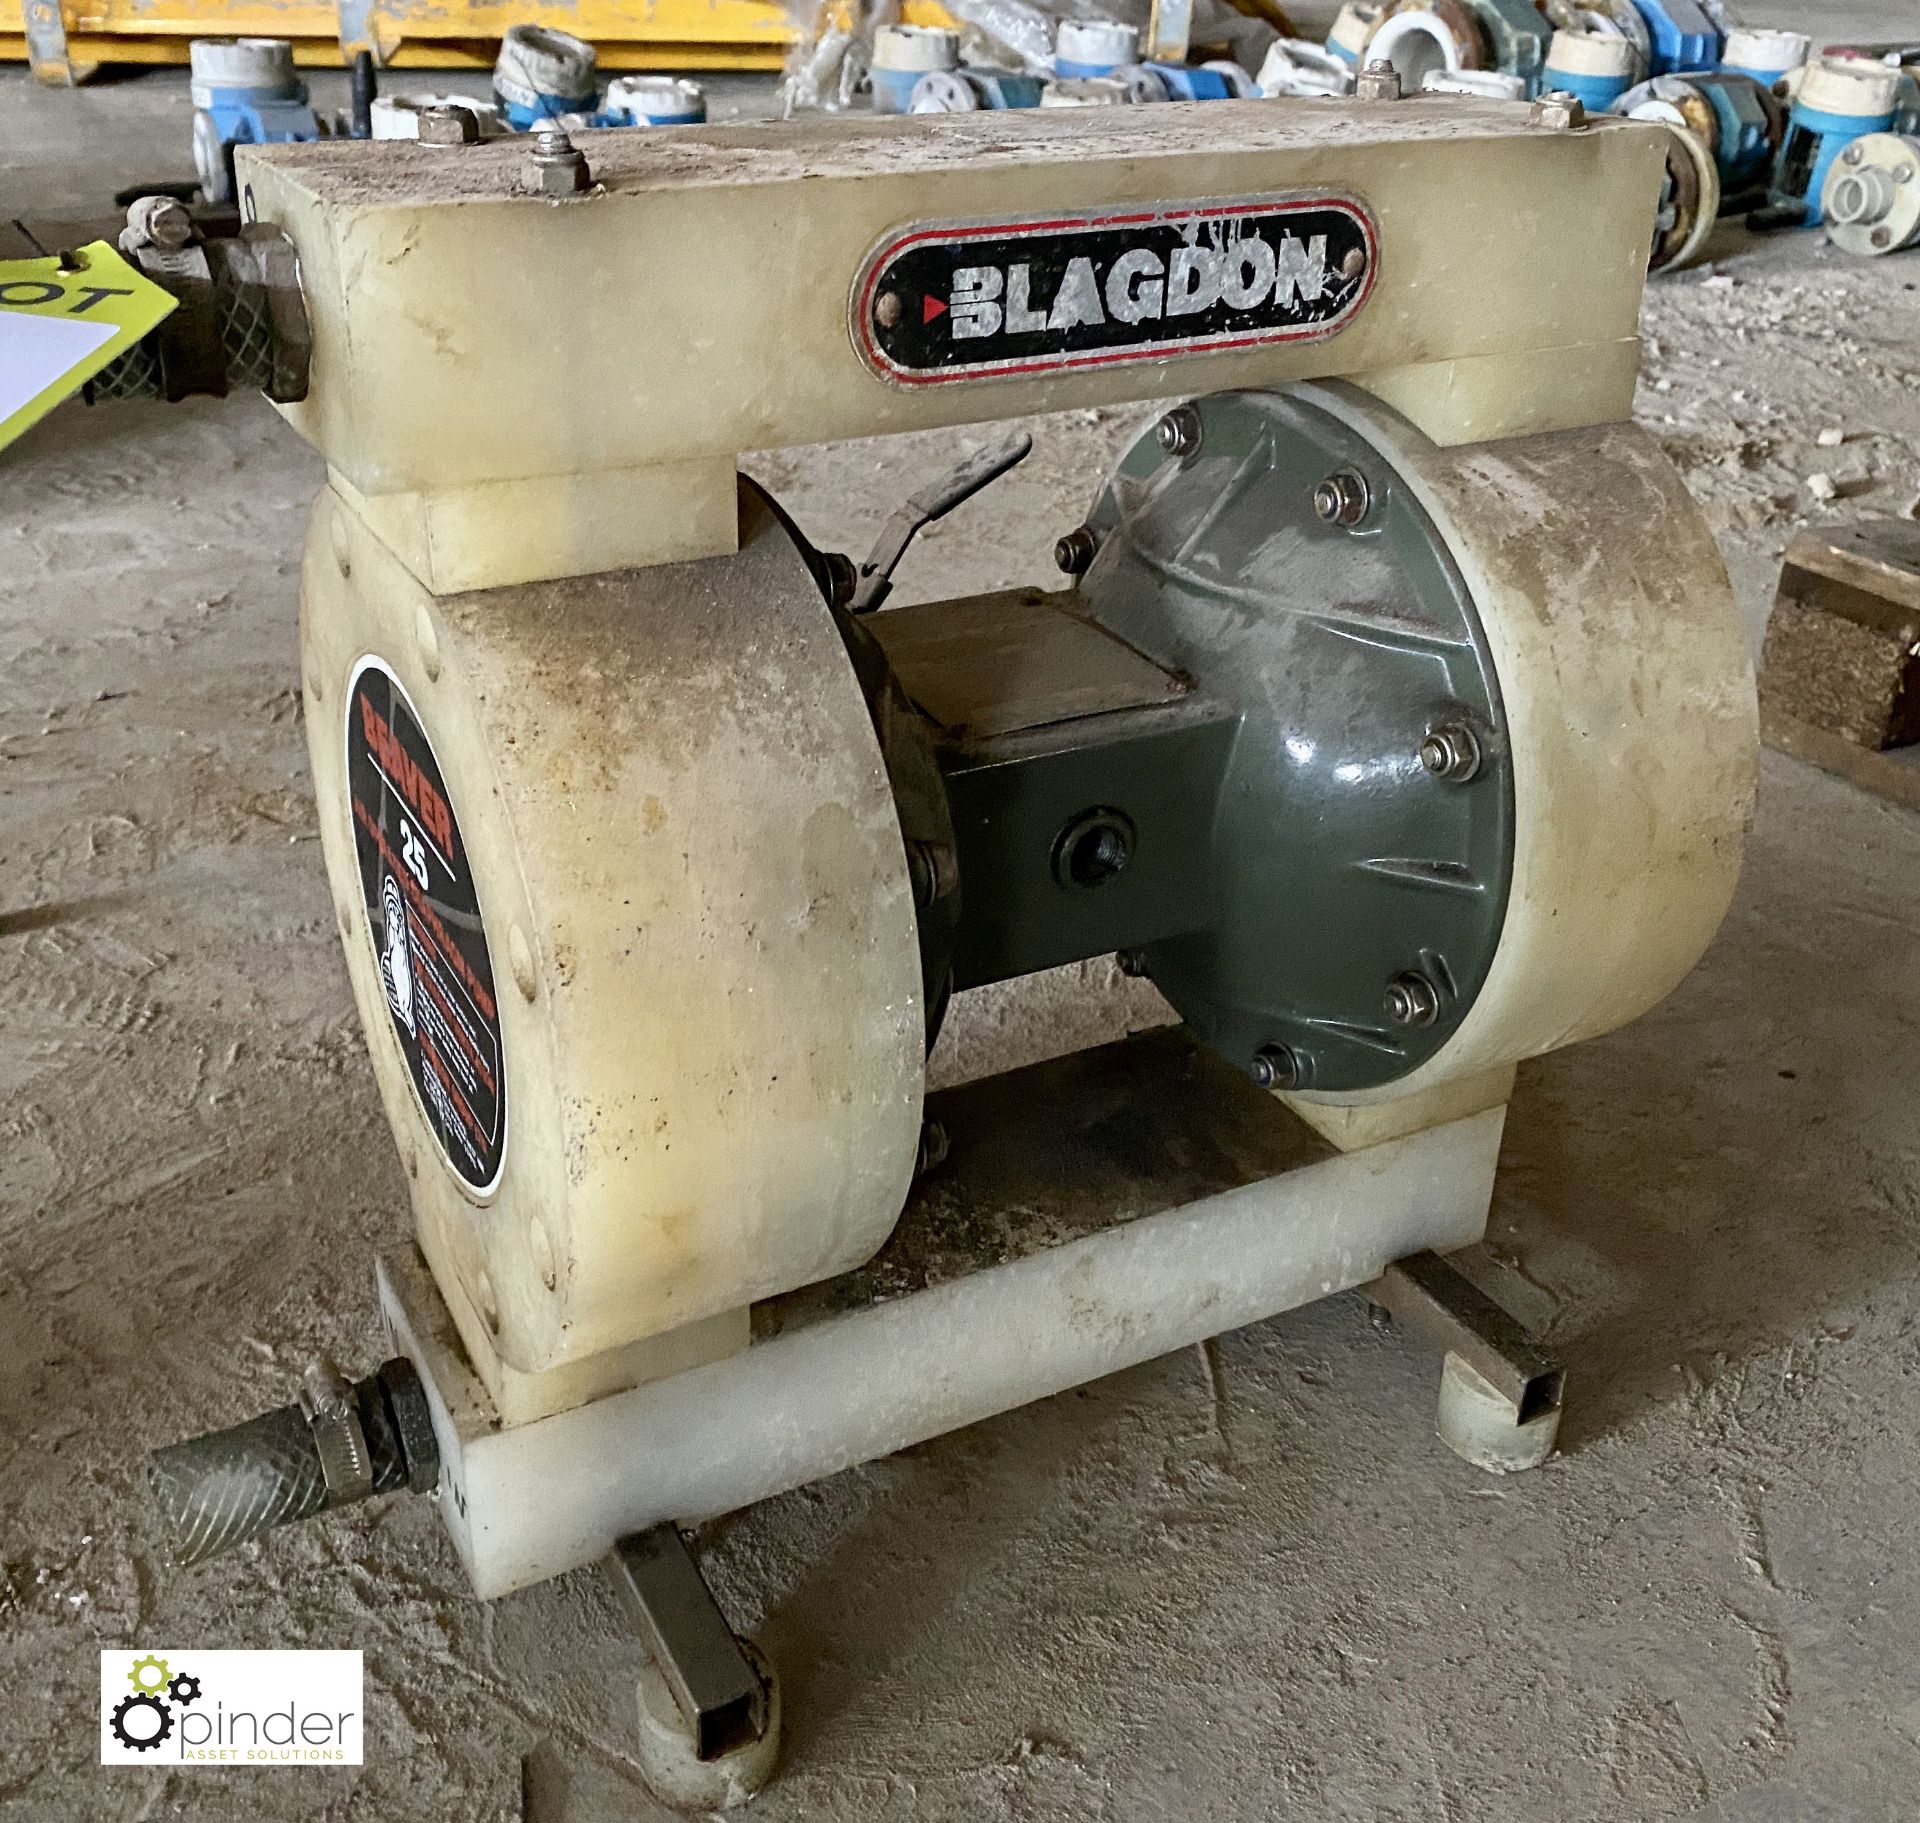 Blagdon Beaver 25 Air Diaphragm Pump Type 1A-PH-BB-TTP, S/N 1030958, 135 litres/min (please note